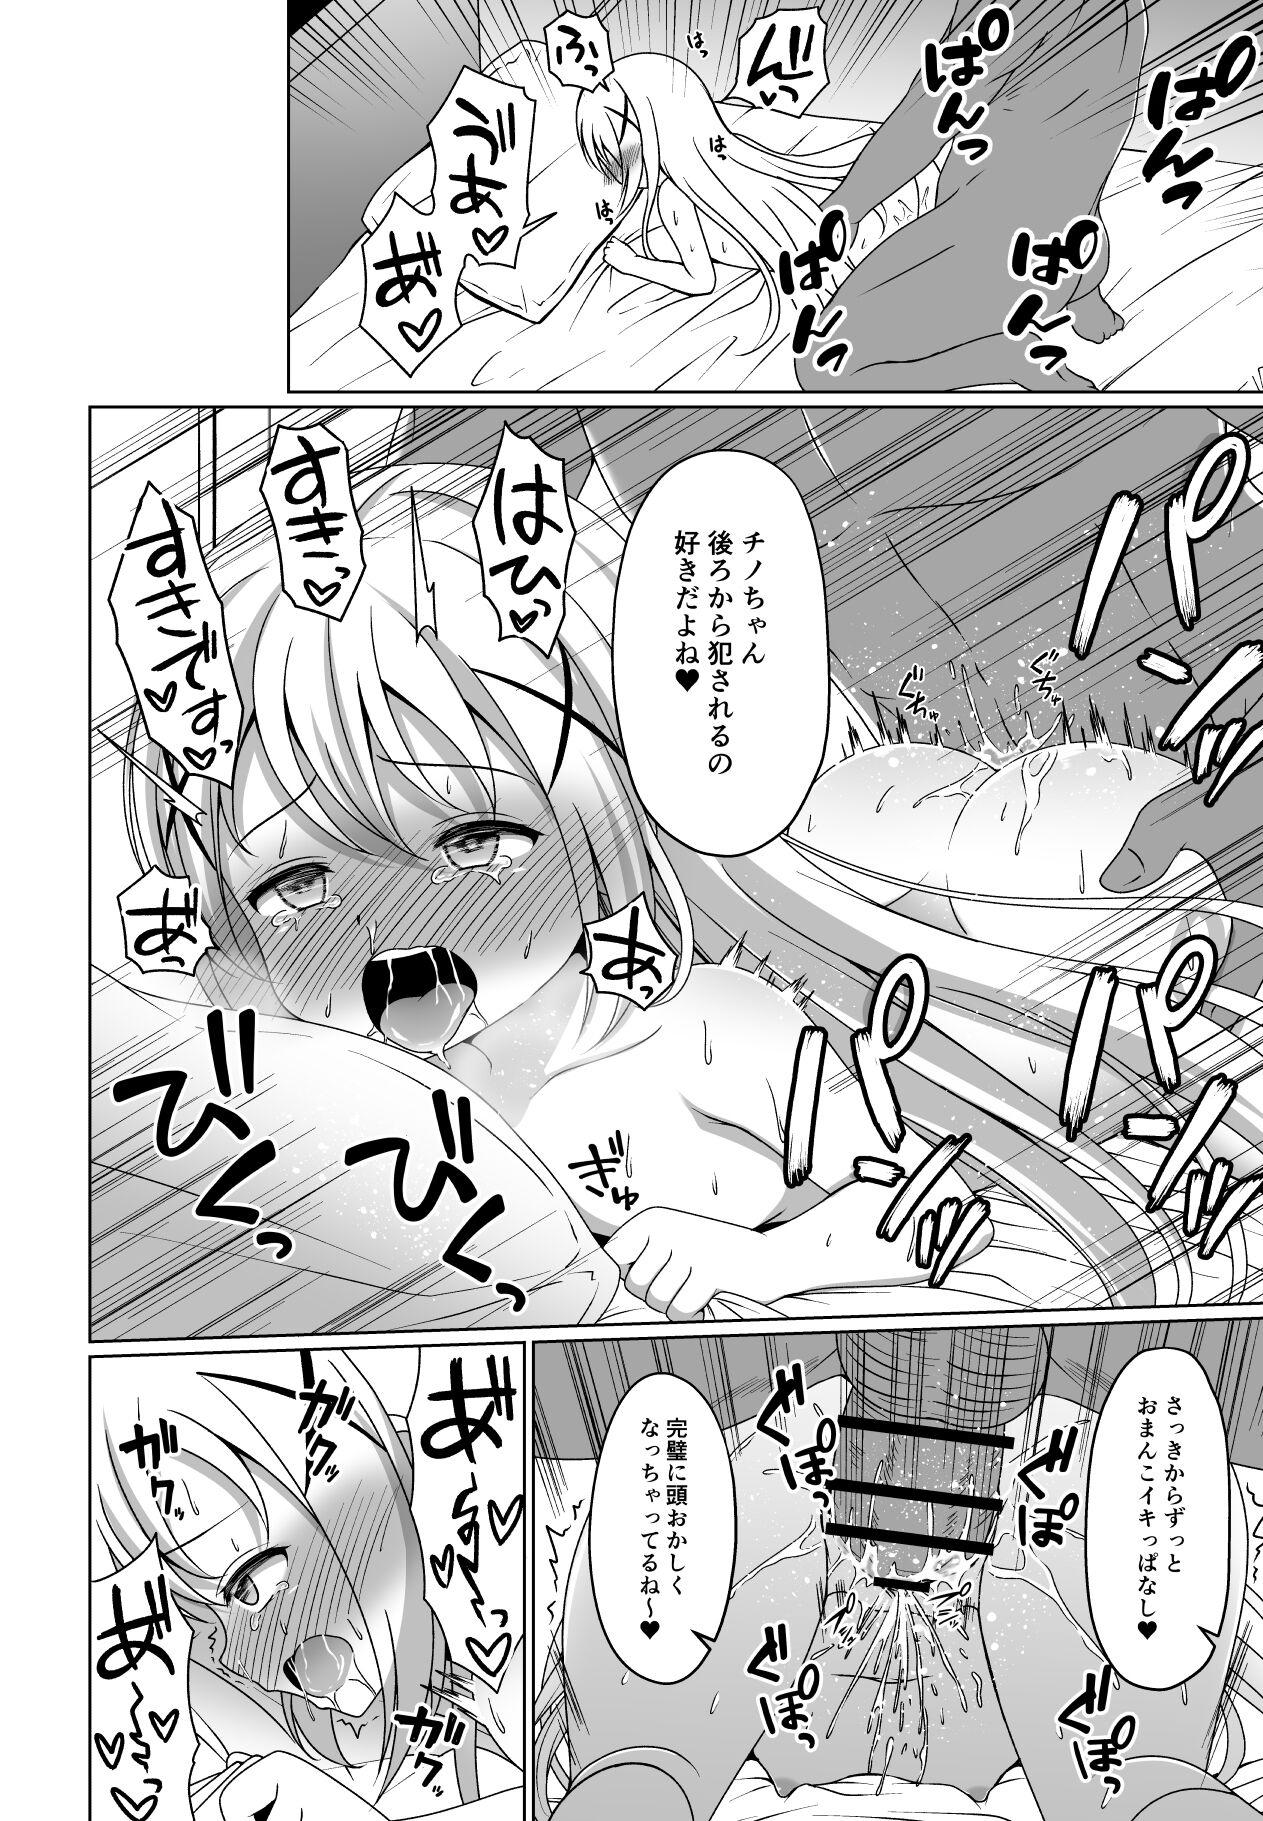 Gostoso Chino-chan Kimeseku Manga - Gochuumon wa usagi desu ka | is the order a rabbit Cam - Page 6